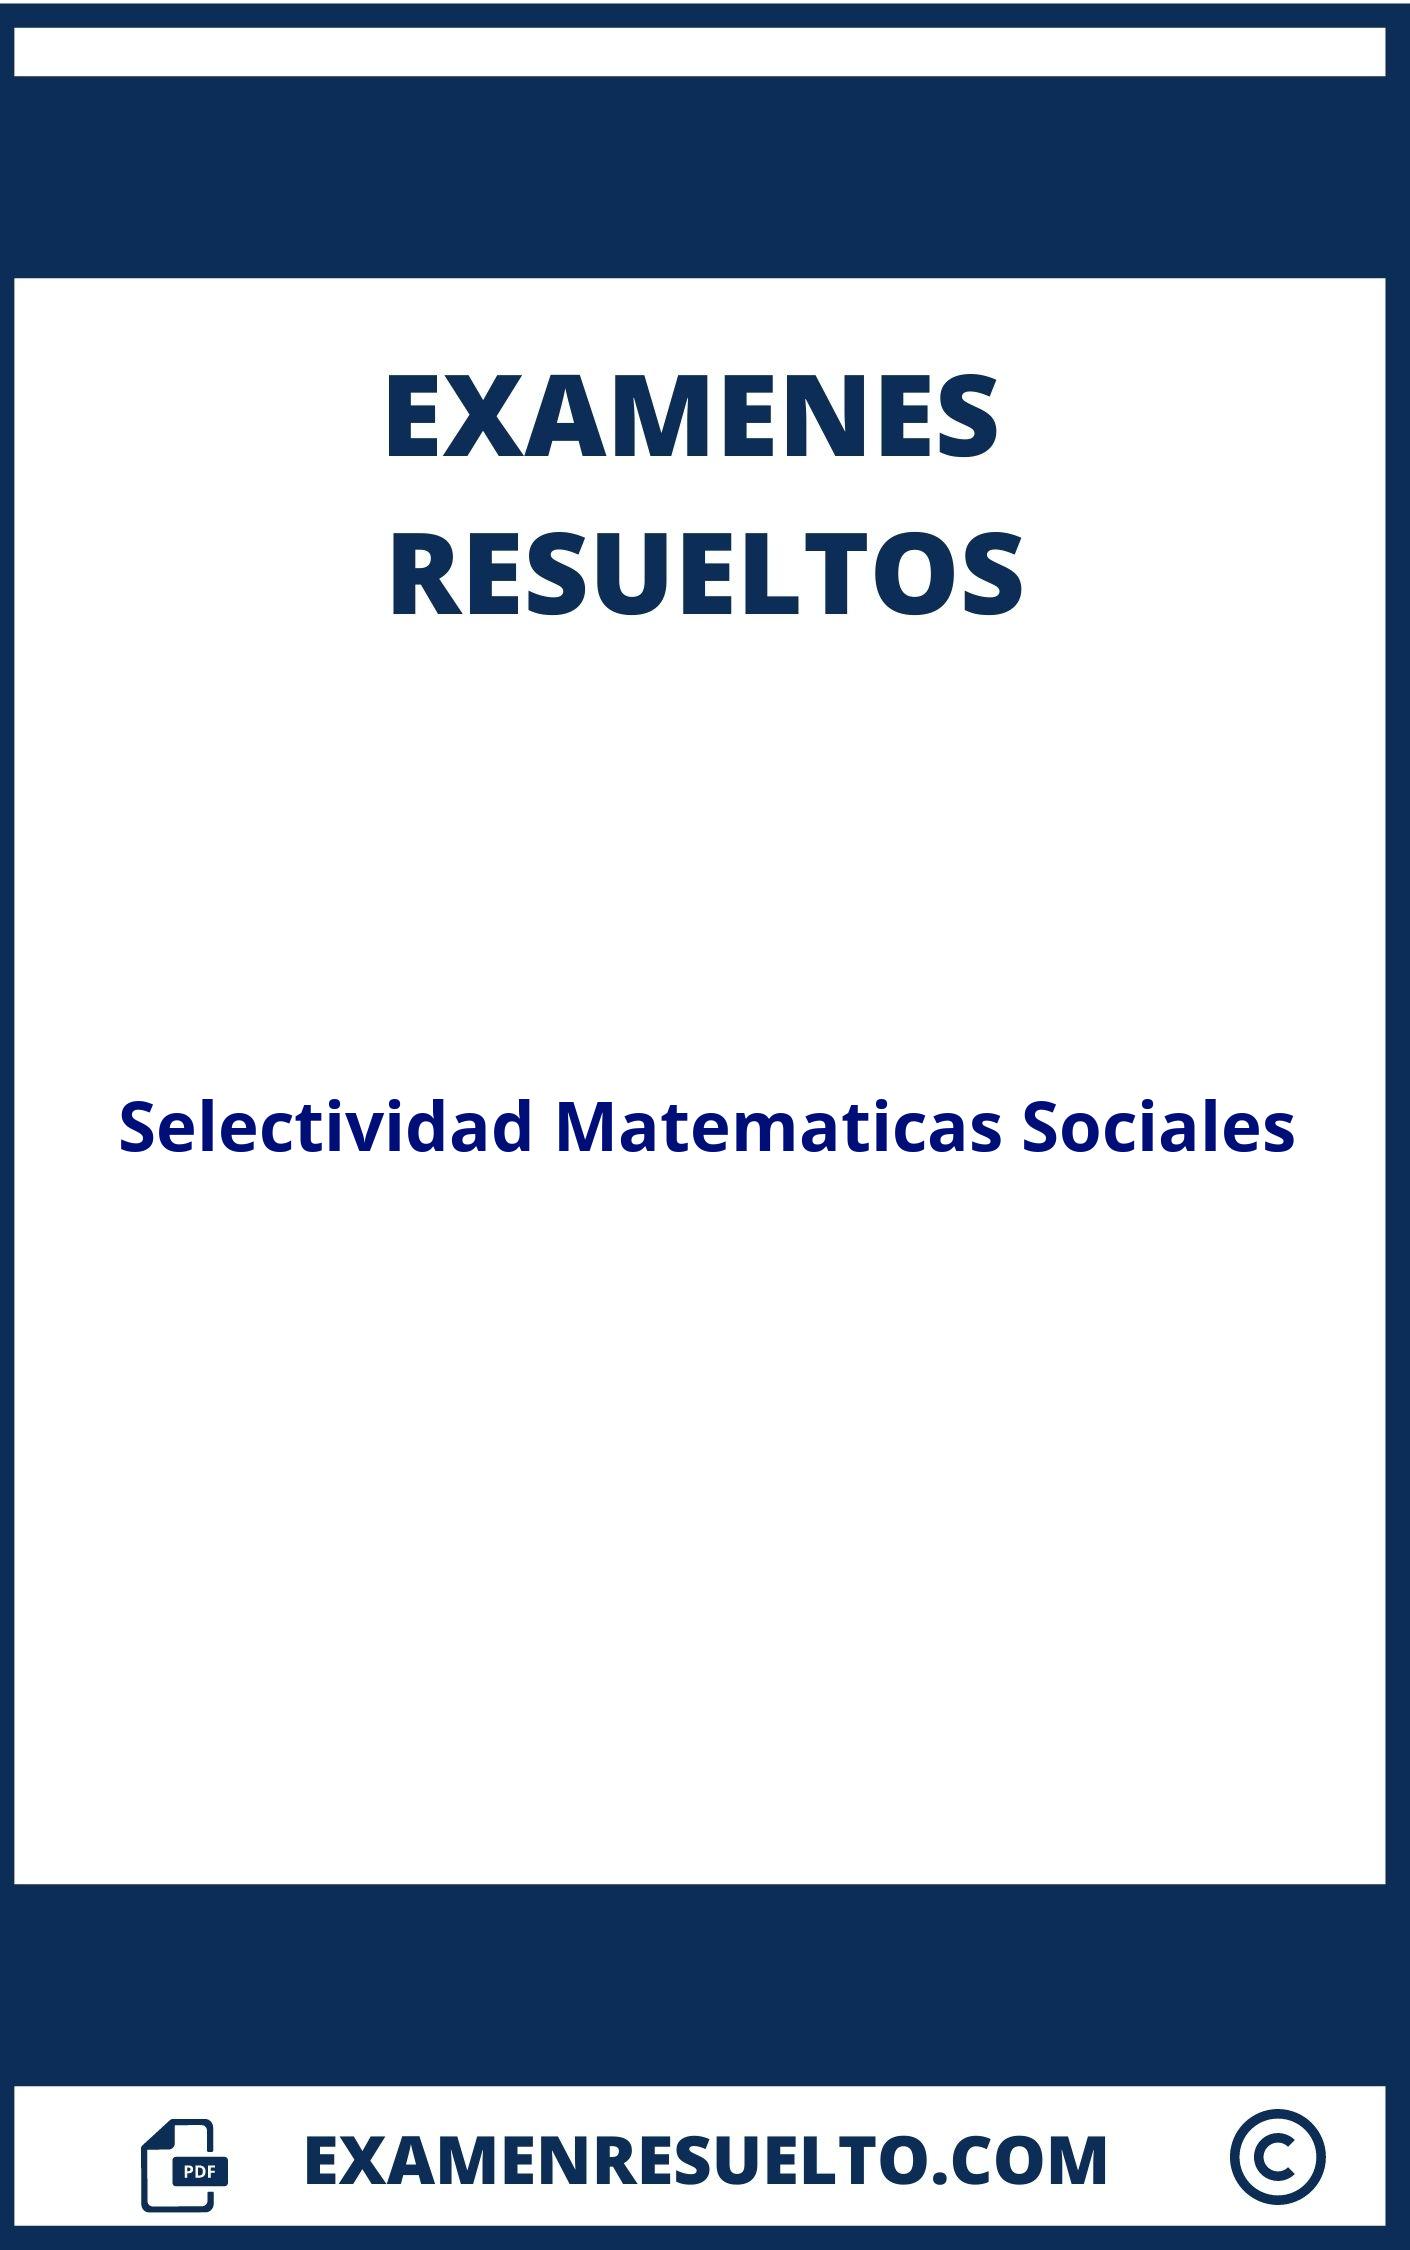 Examenes Selectividad Matematicas Sociales Resueltos